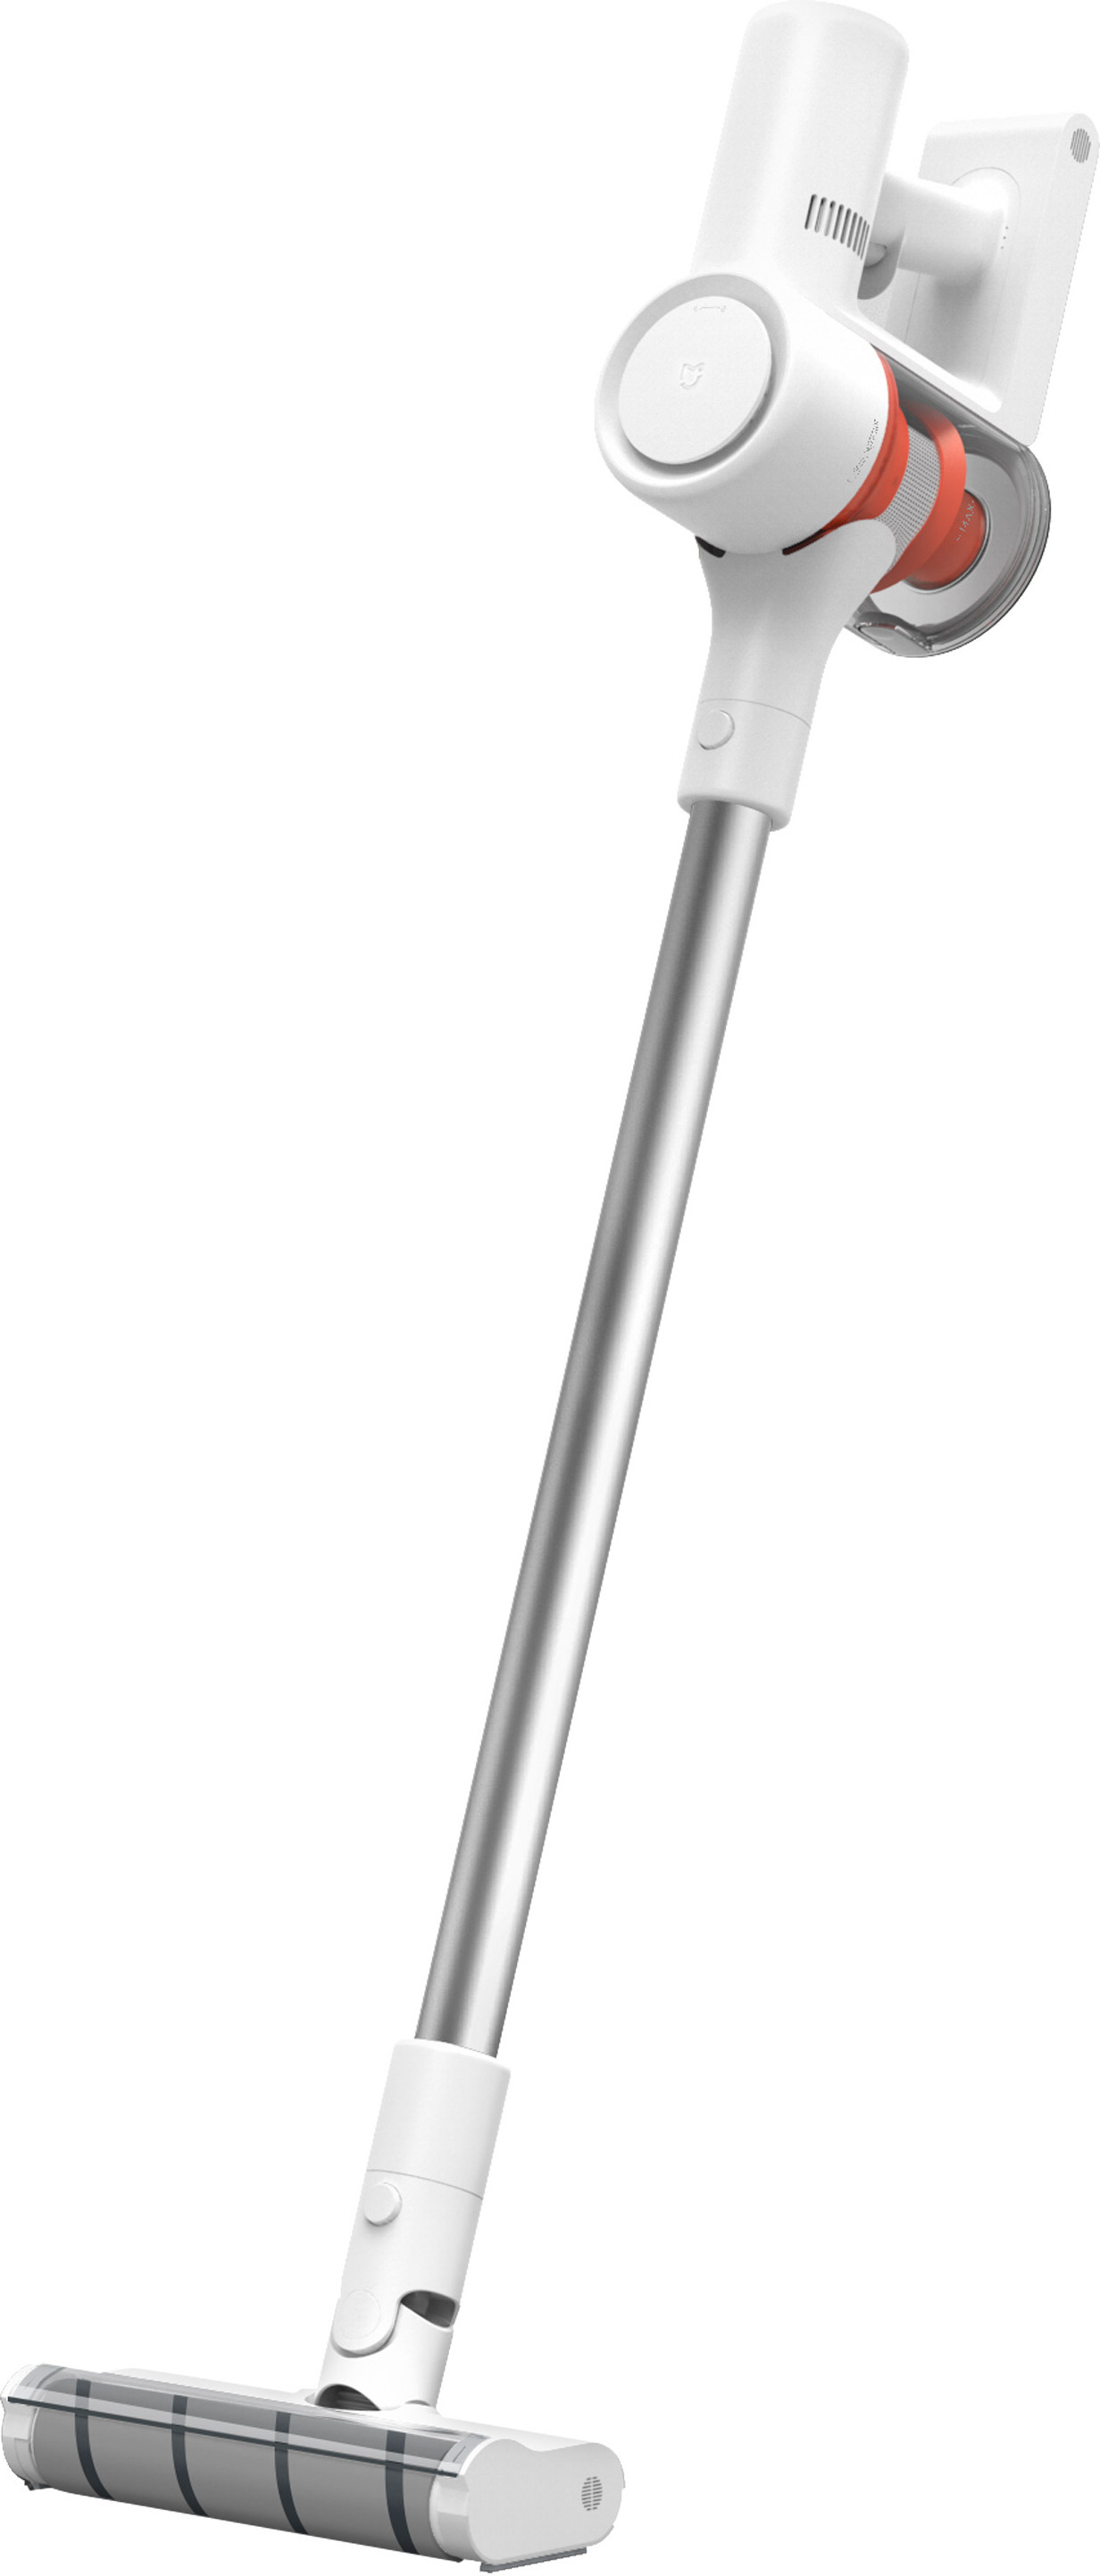 Вертикальный ручной пылесос xiaomi. Беспроводной пылесос Xiaomi Mijia 1c. Пылесос Xiaomi mi Handheld Vacuum. Пылесос Xiaomi Mijia scwxcq02zhm. Вертикальный пылесос Xiaomi mi Handheld Vacuum Cleaner.